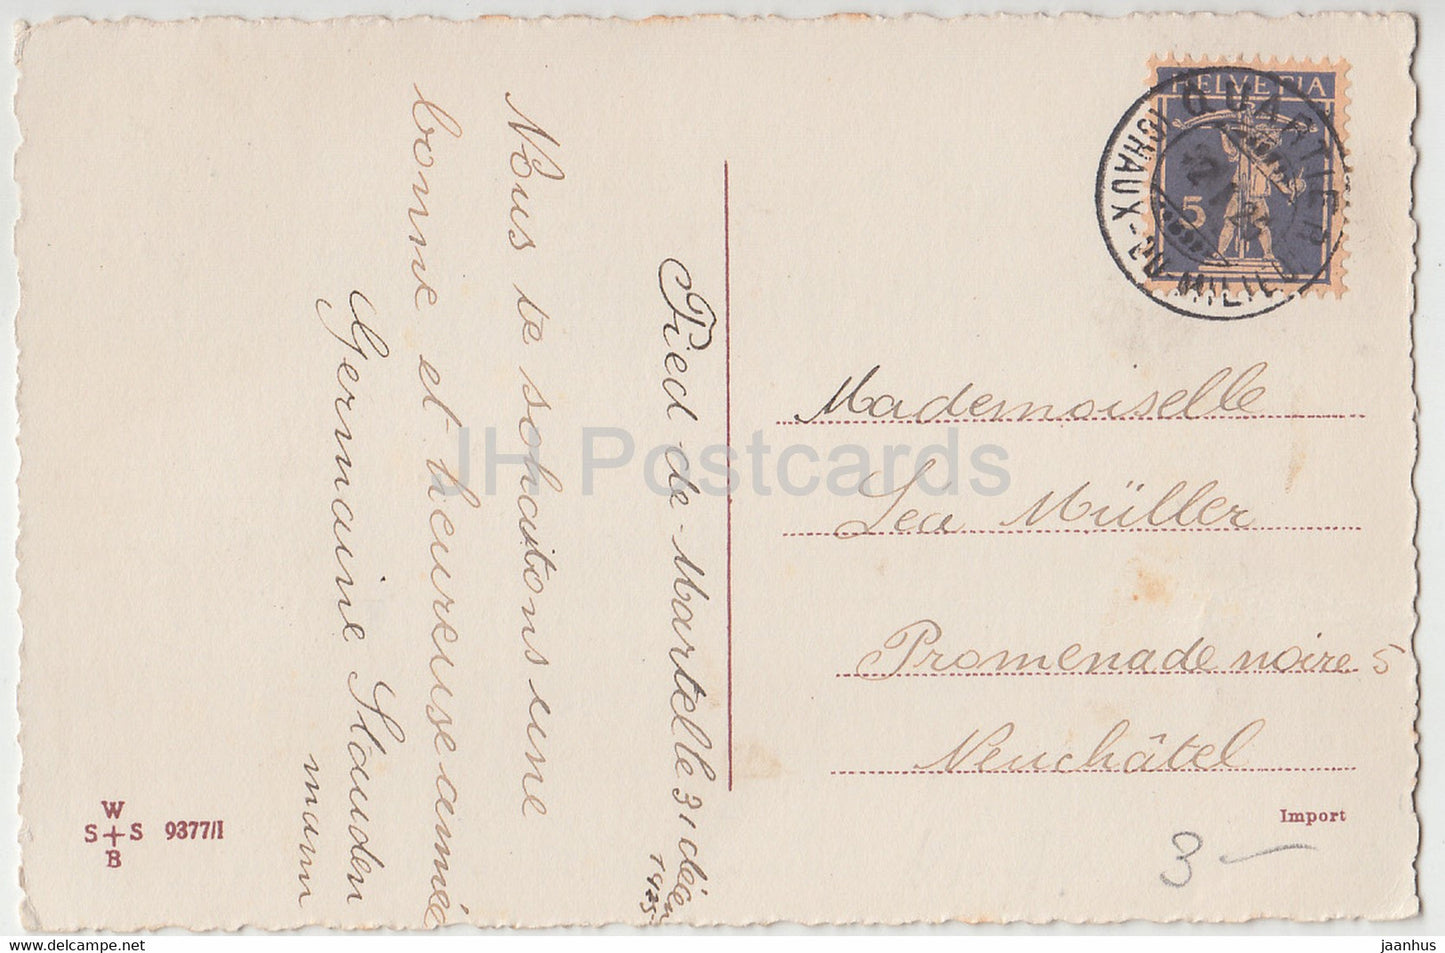 Carte de voeux du Nouvel An - Bonne Annee - oiseaux - mésange bleue - WSSB 9377/I - carte postale ancienne - 1926 - France - utilisé